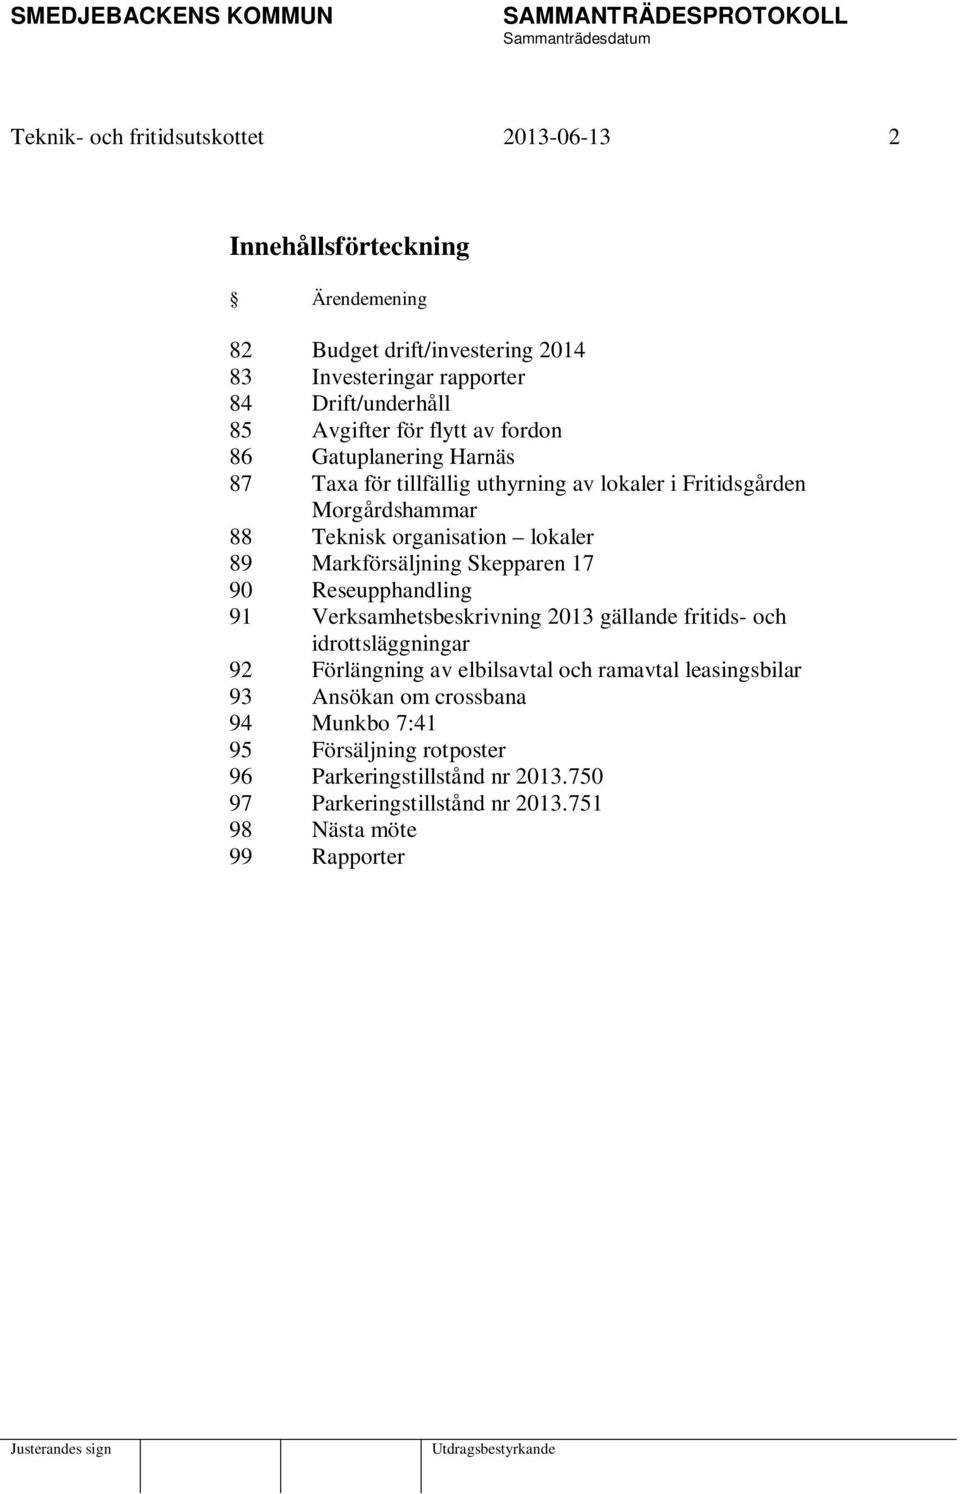 Markförsäljning Skepparen 17 90 Reseupphandling 91 Verksamhetsbeskrivning 2013 gällande fritids- och idrottsläggningar 92 Förlängning av elbilsavtal och ramavtal